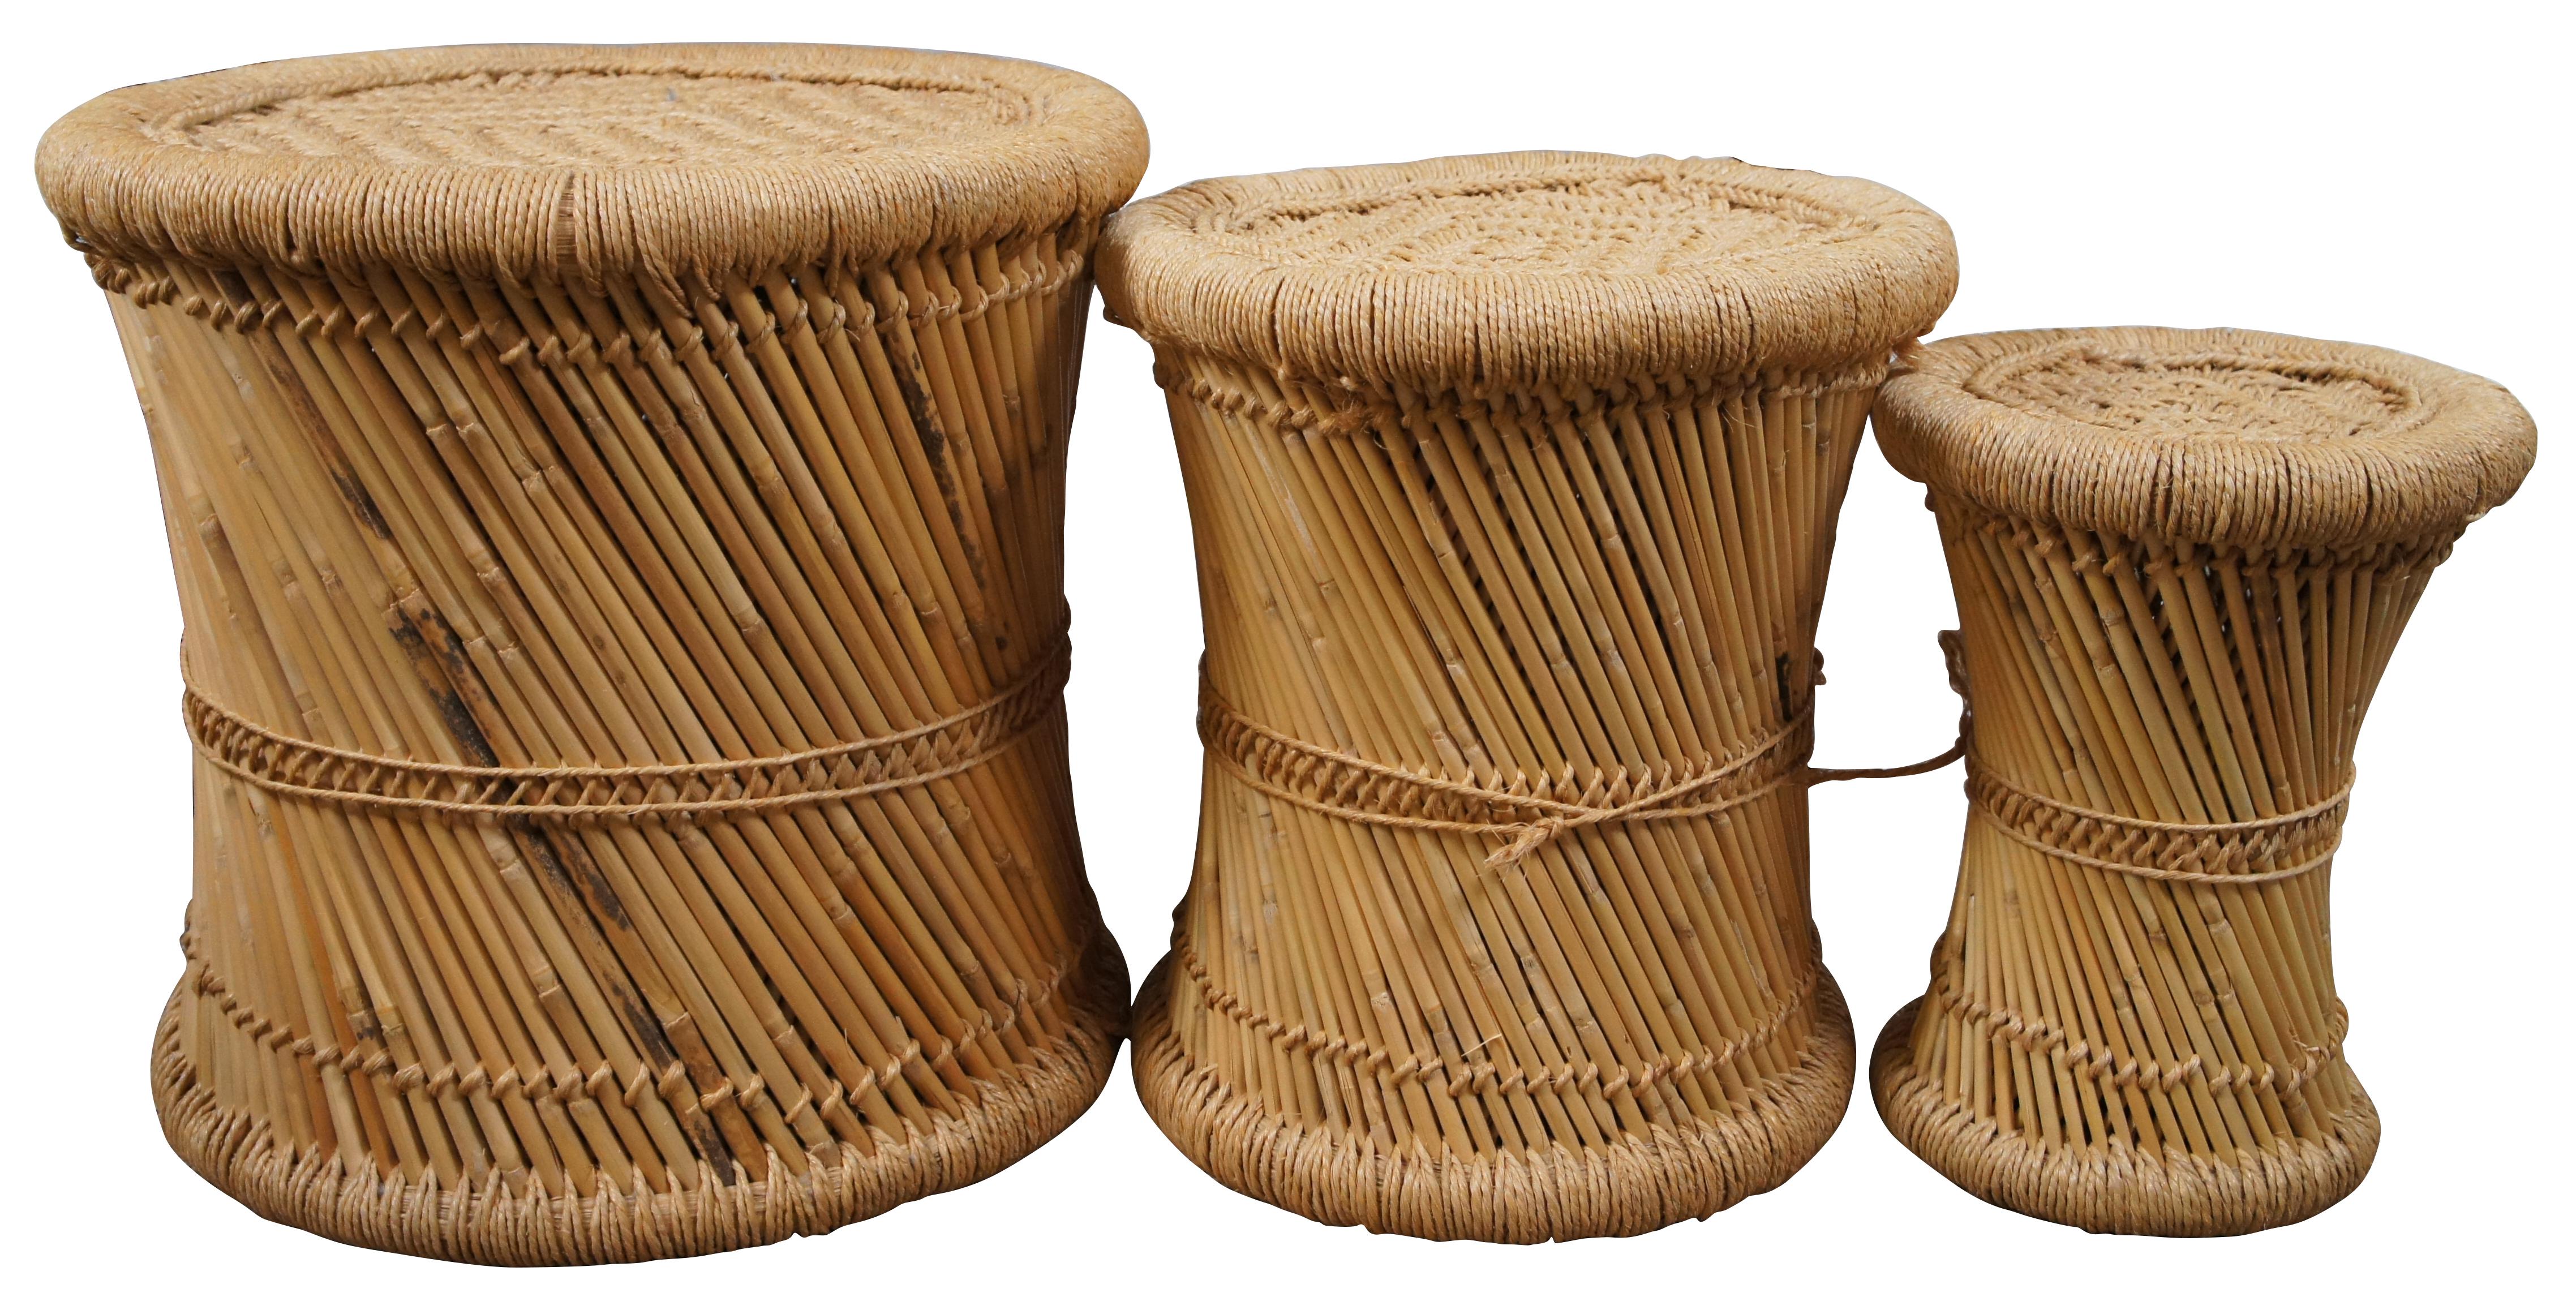 Set aus drei runden Beistelltischen oder Hockern aus Rohr/Bambus im Vintage-Stil (CIRCA 1970) mit eingeklemmter Taille, spiralförmigem Design, umwickelten Kanten aus Sisal-/Jutekordel und diamantgeflochtenen Platten. Hohle Basis, kann ineinander